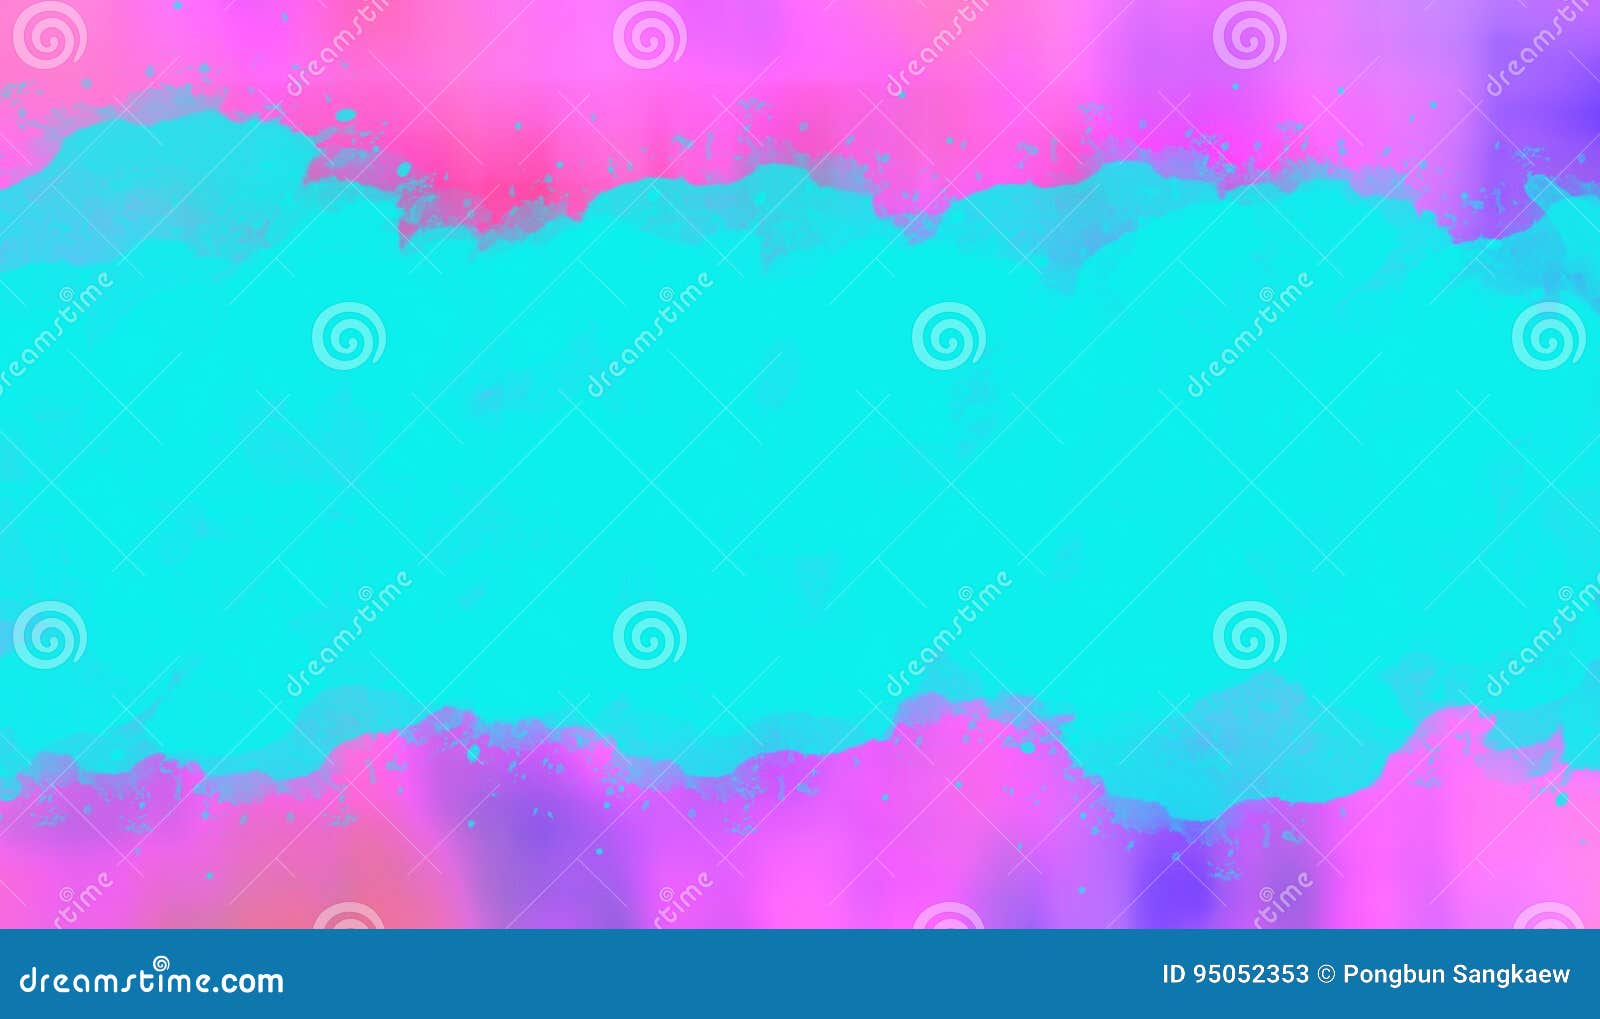 Featured image of post Cores De Fundo Para Banners Voc ver as cores de fundo divididas em cores do tema e cores padr o